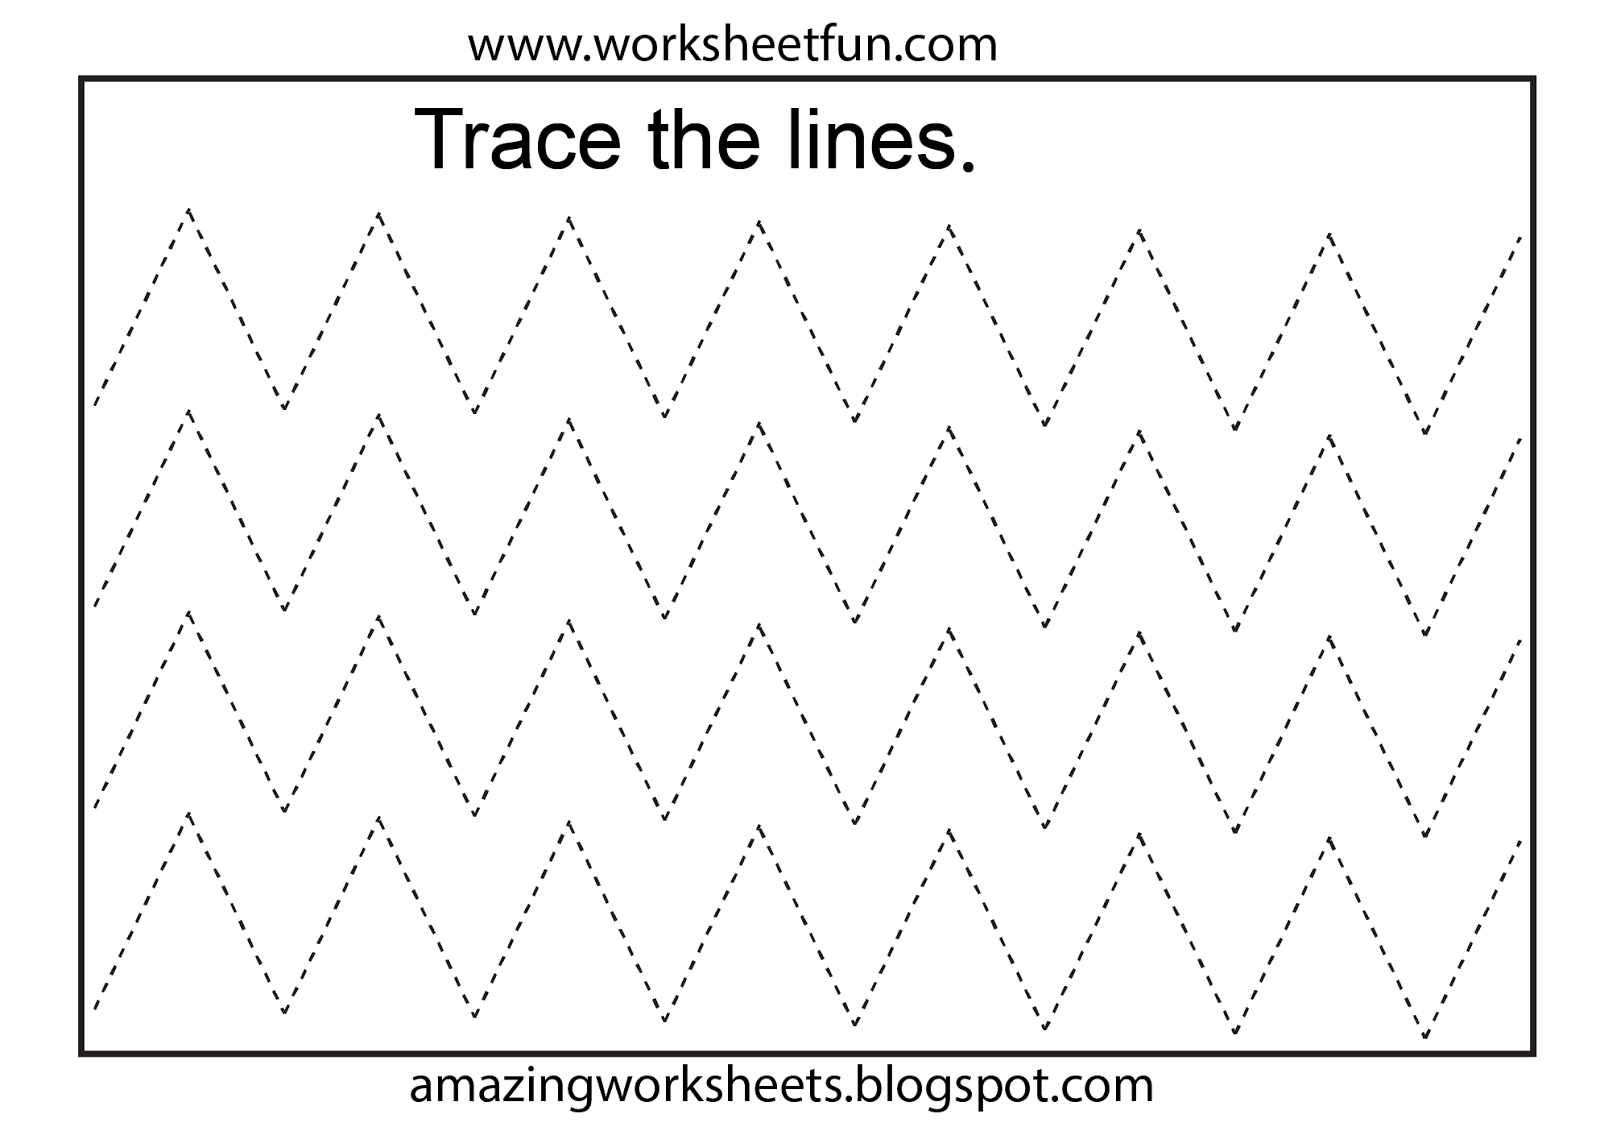 Free Printable Tracing Worksheets Preschool | Preschool Worksheets - Free Printable Tracing Worksheets